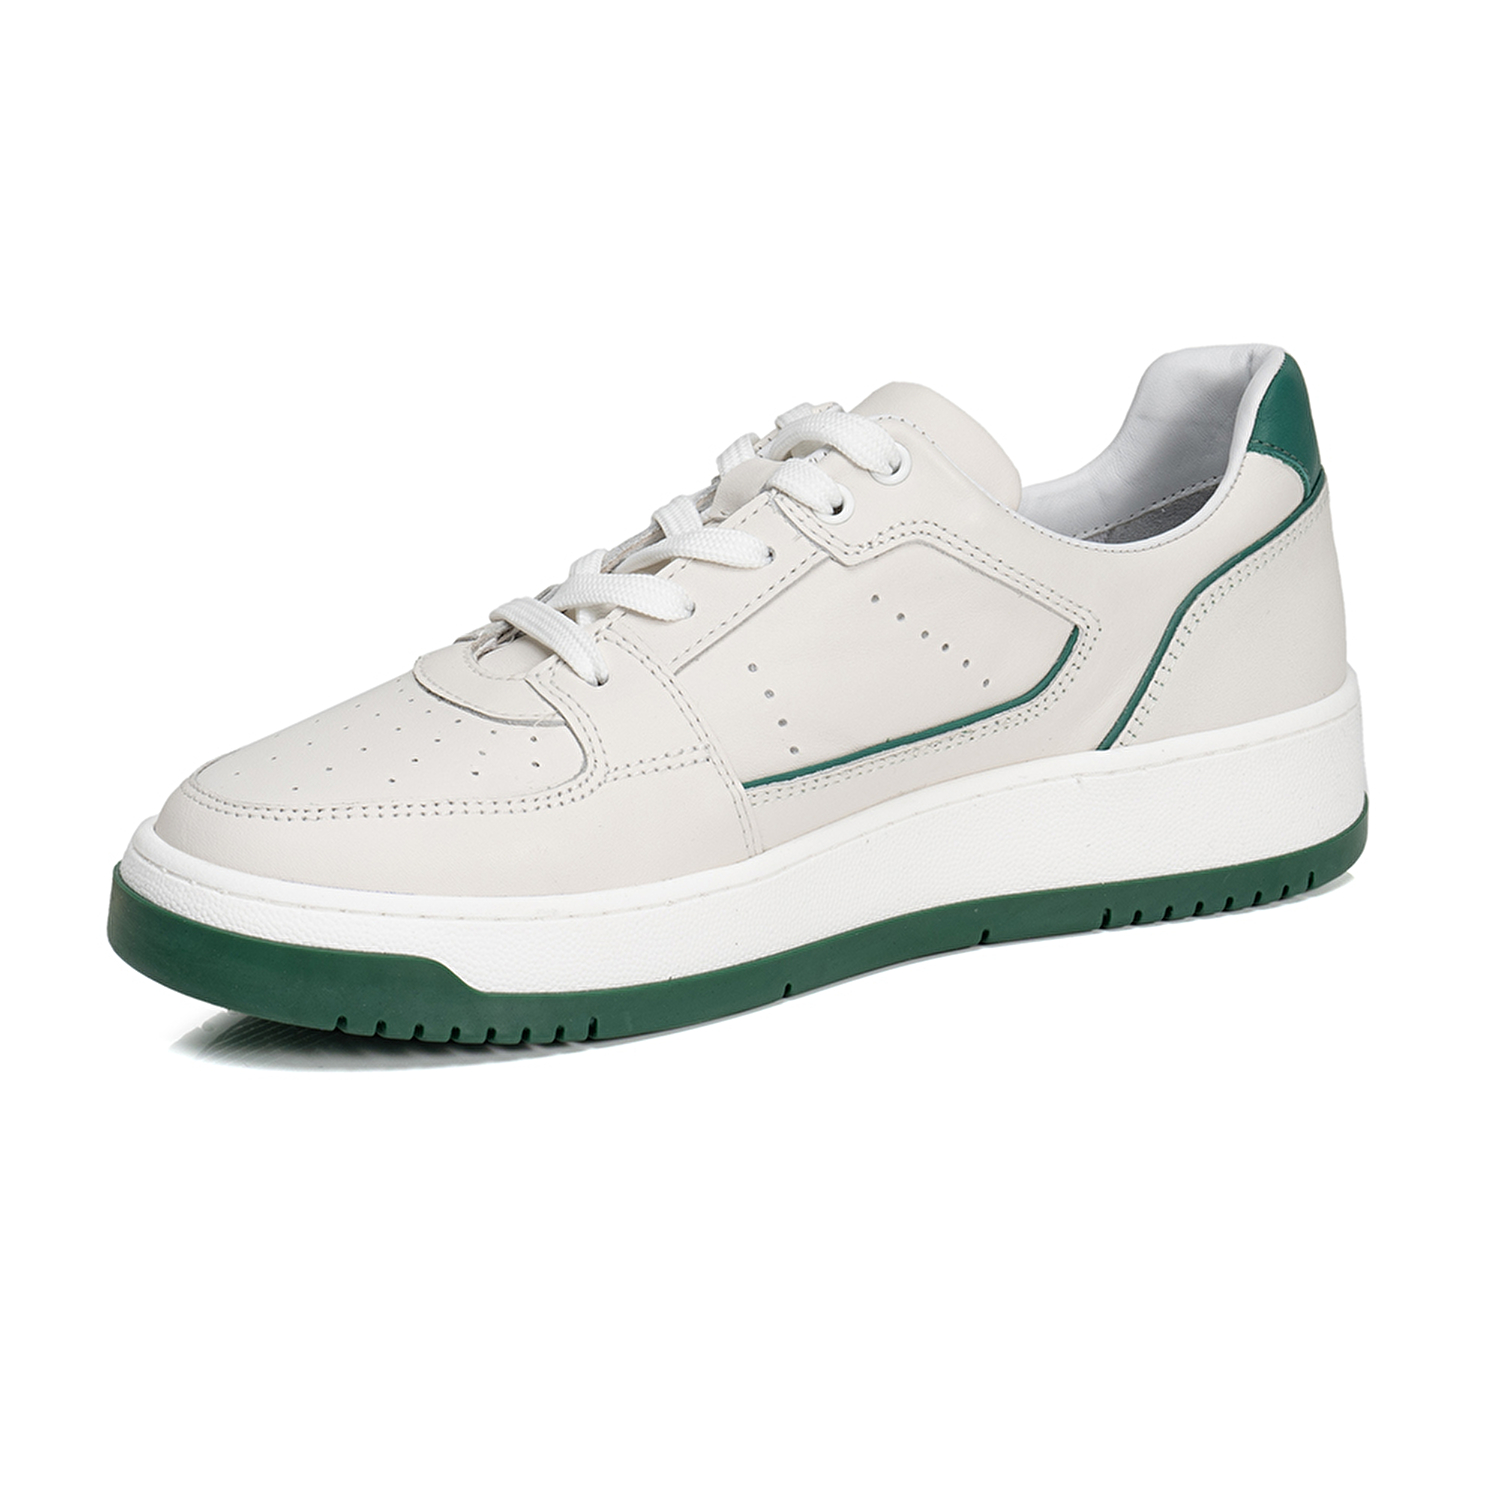 Kadın Beyaz Yeşil Hakiki Deri Sneaker Ayakkabı 3Y2SA32311-2